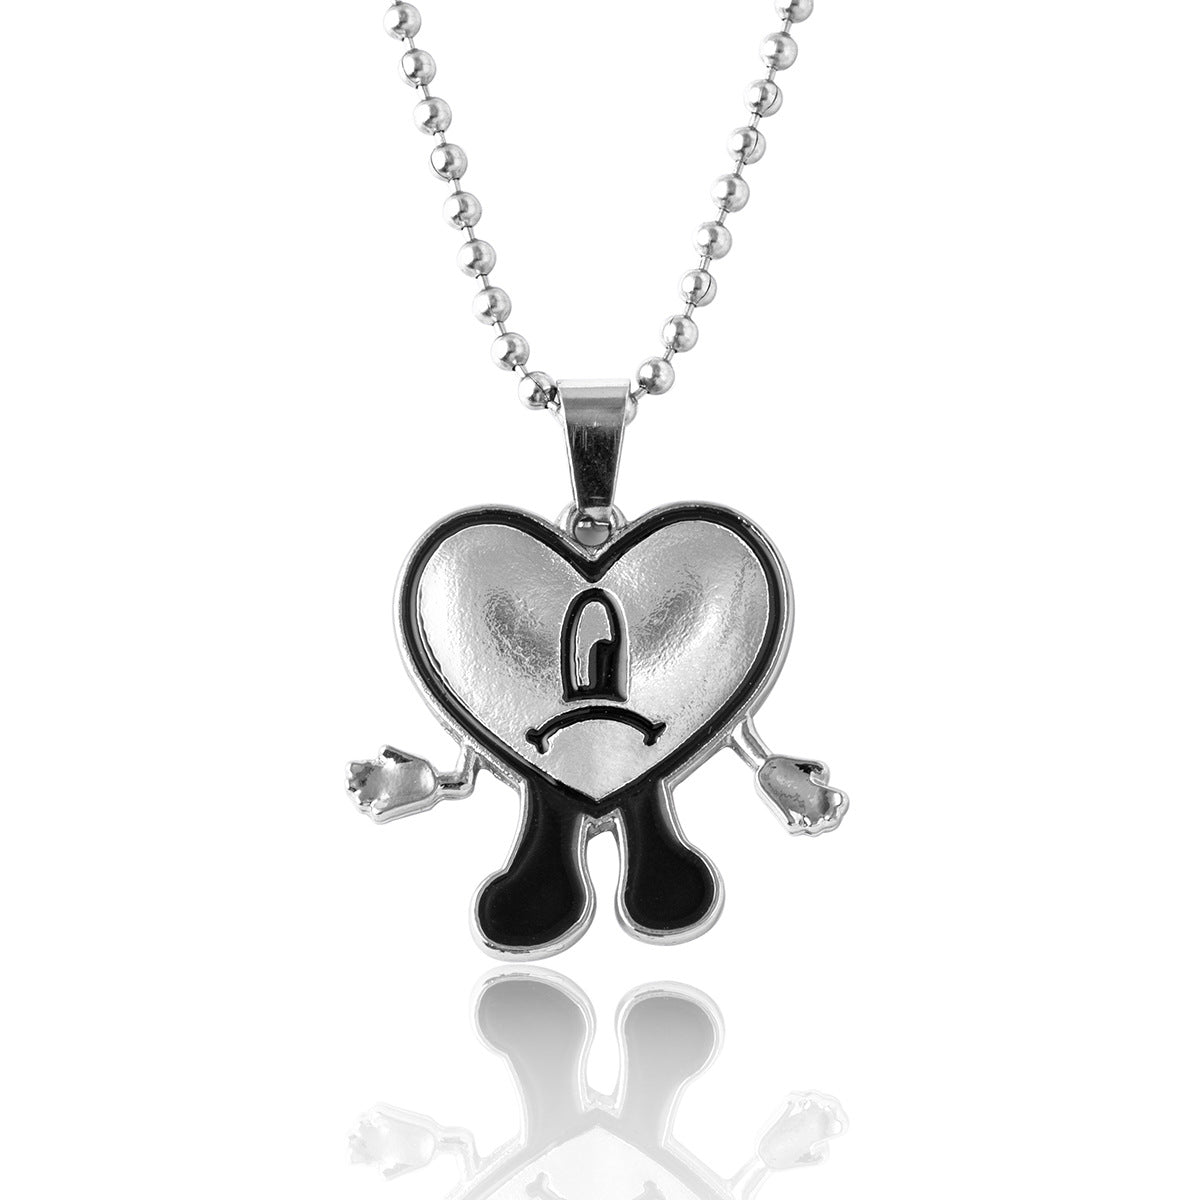 Fashion Heart Shape Alloy Chain Unisex Pendant Necklace 1 Piece